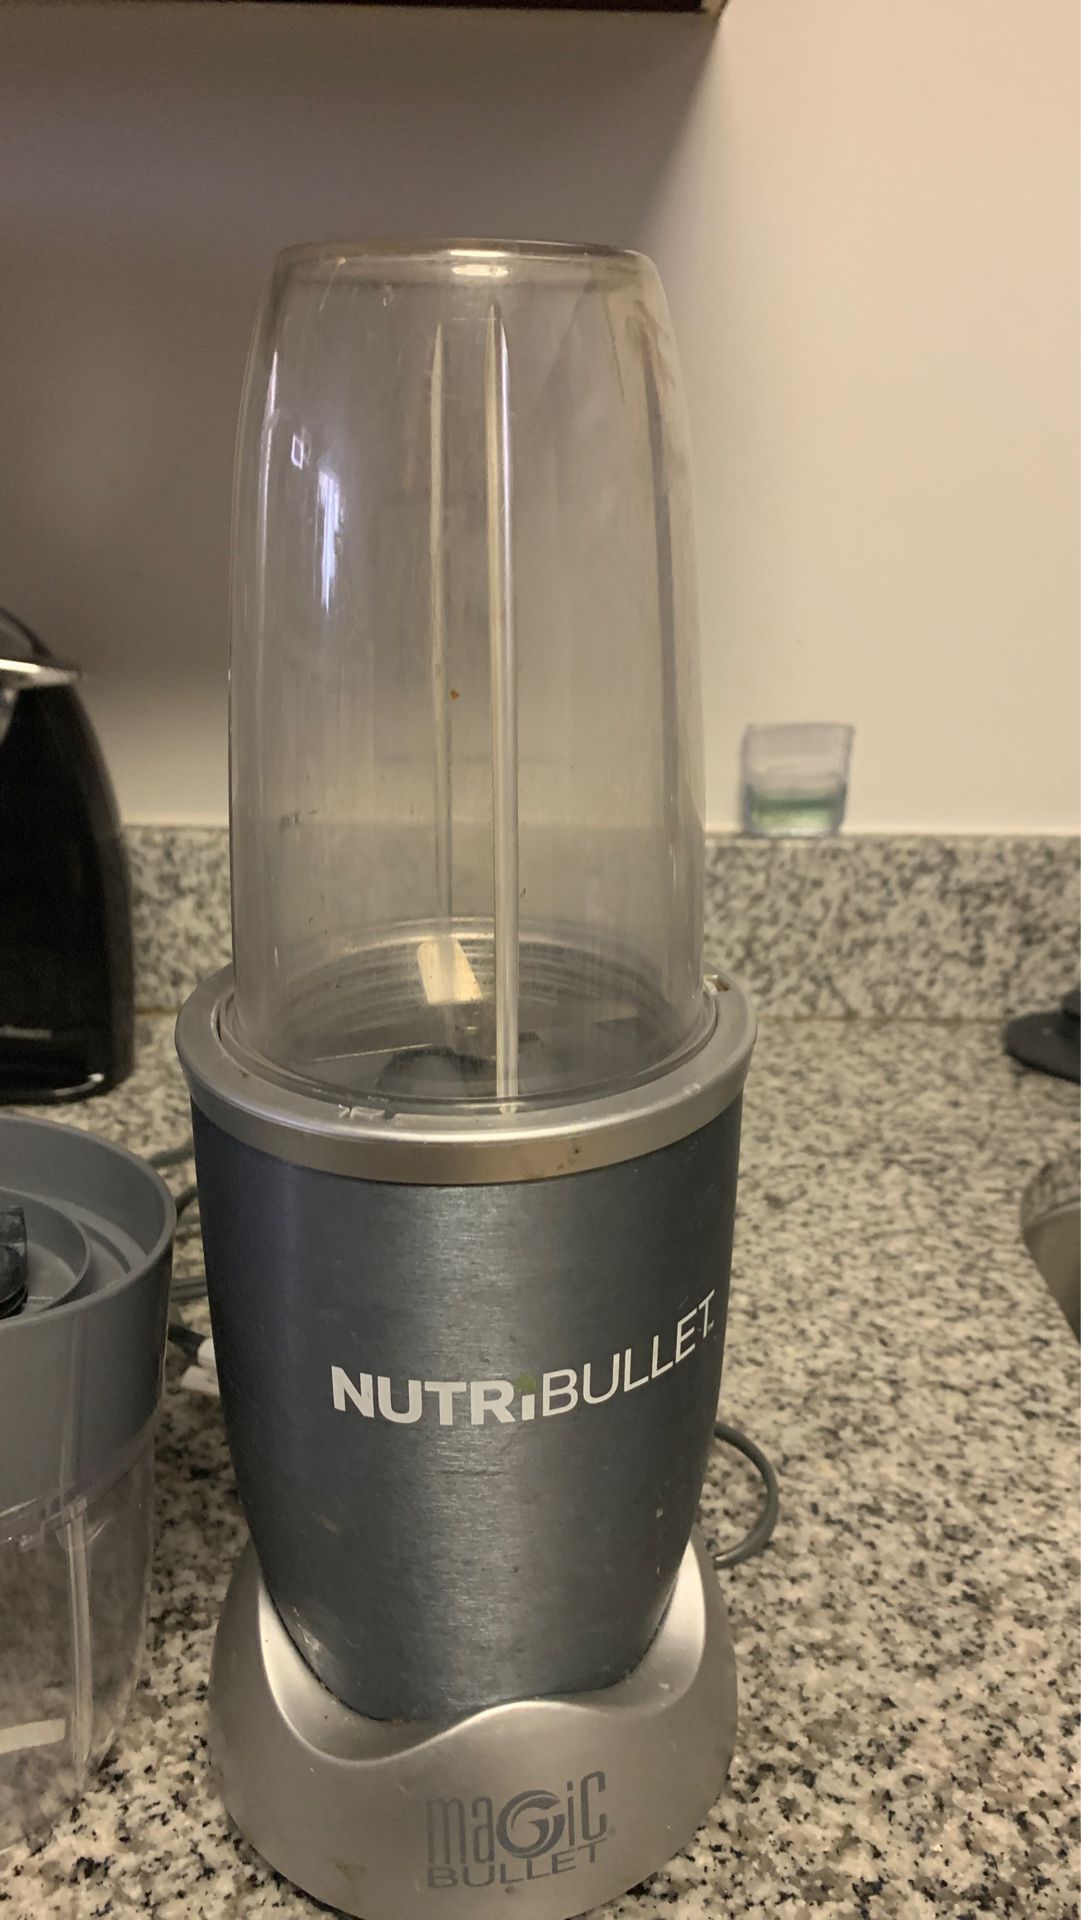 Nutribullet magic bullet kitchen appliance blender